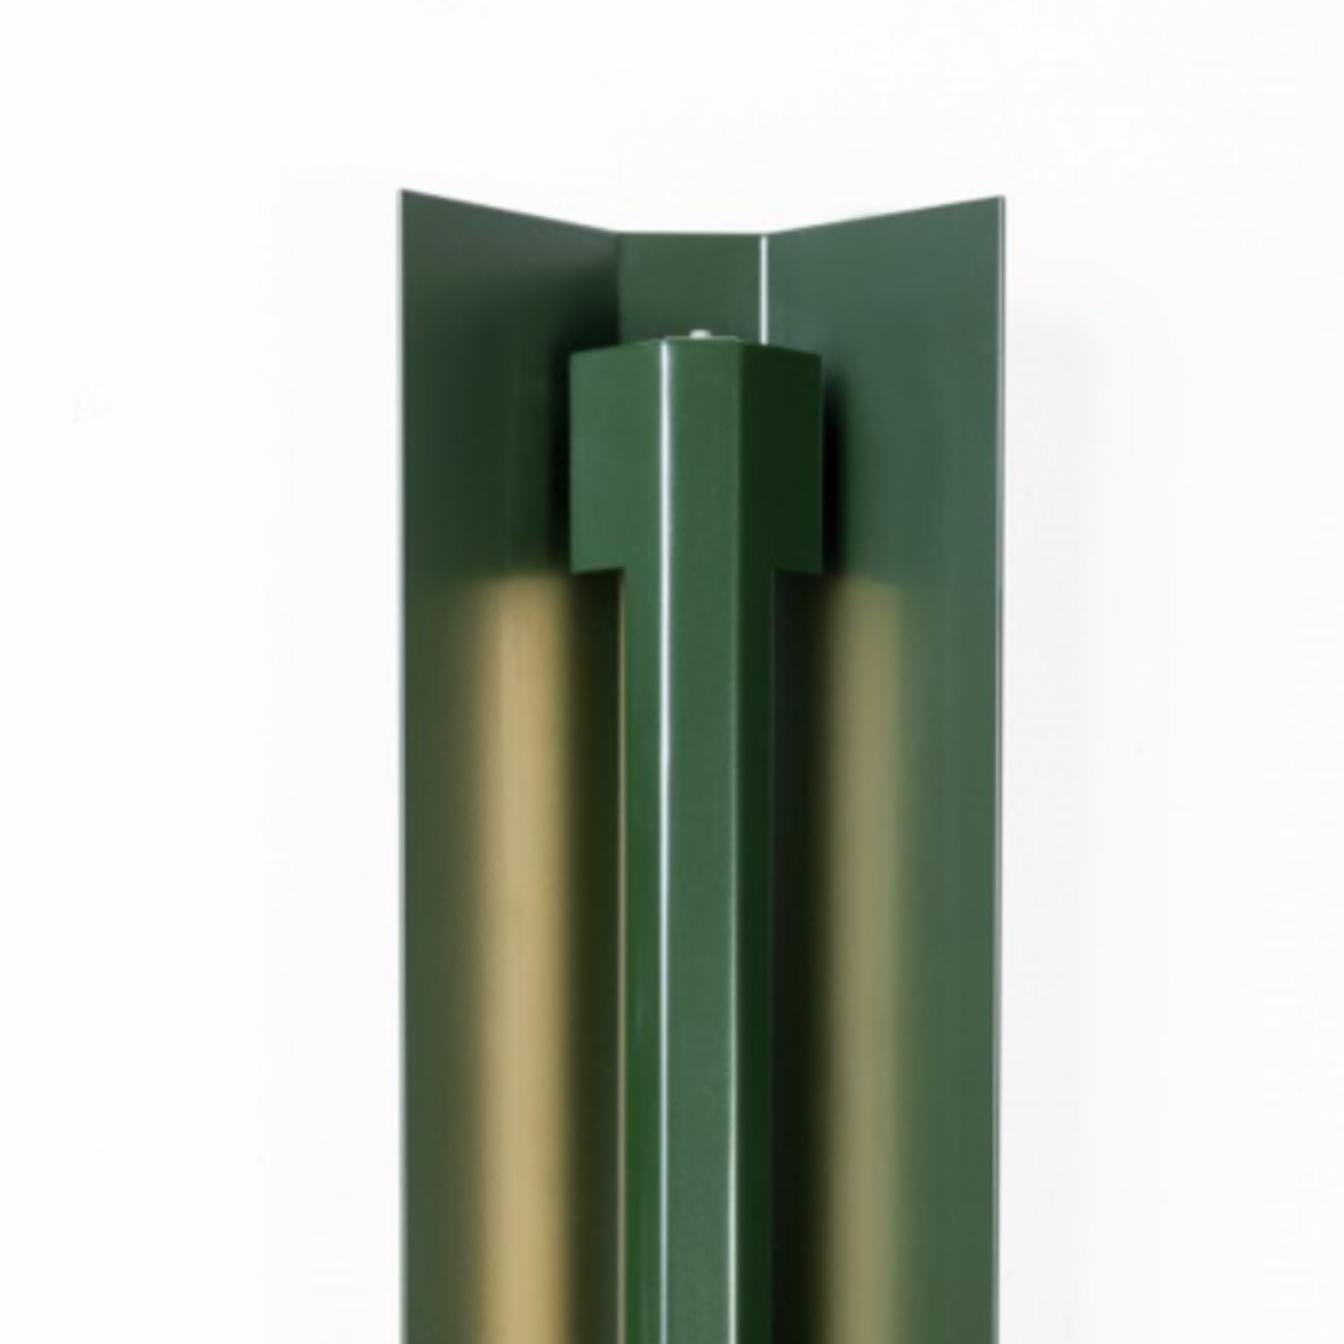 Große Misalliance Ral Bottle Grüne Wandleuchte von Lexavala
Abmessungen: D 16 x B 160 x H 8 cm
MATERIAL: pulverbeschichtetes Aluminium.

Es gibt zwei lange Sockelabdeckungen, die sich über die LED erstrecken. Zwei kurze sind in den Modellen